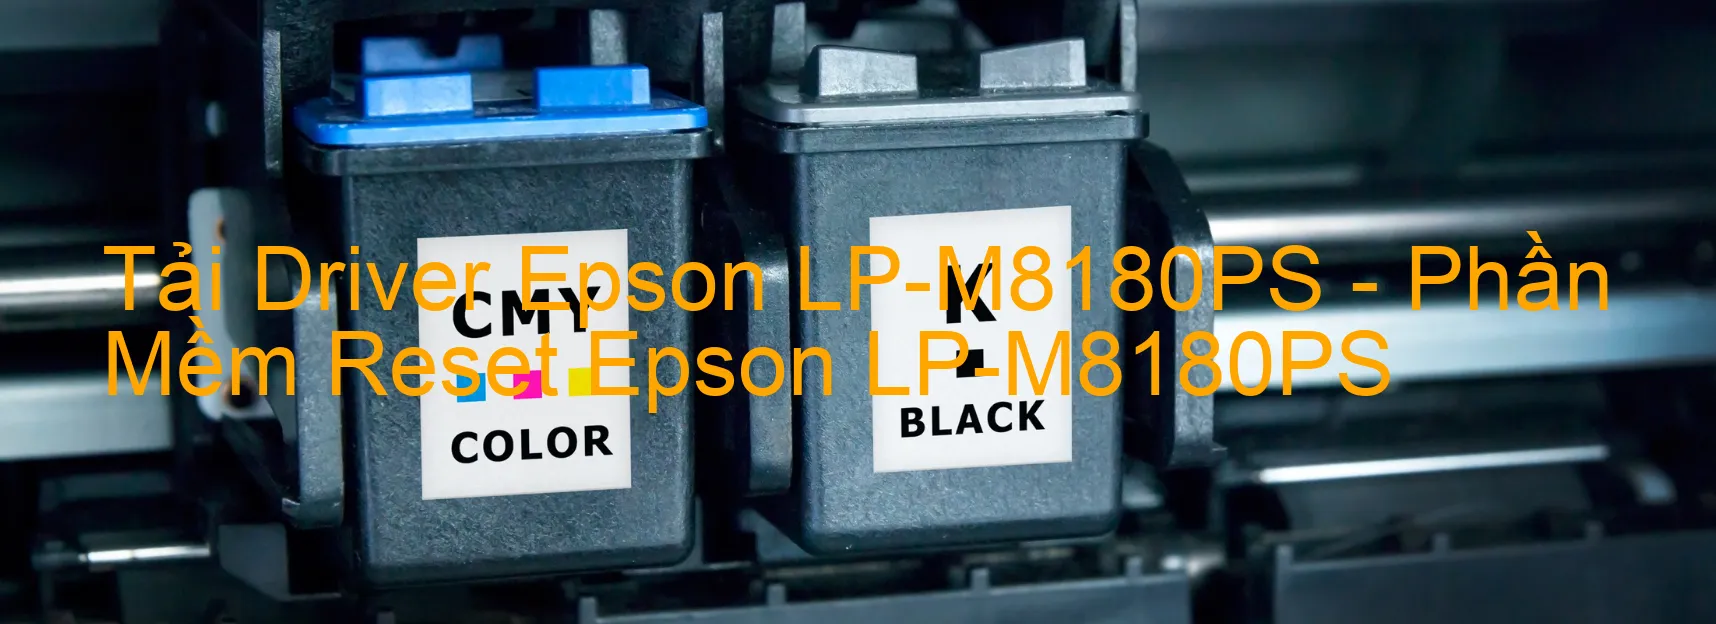 Driver Epson LP-M8180PS, Phần Mềm Reset Epson LP-M8180PS